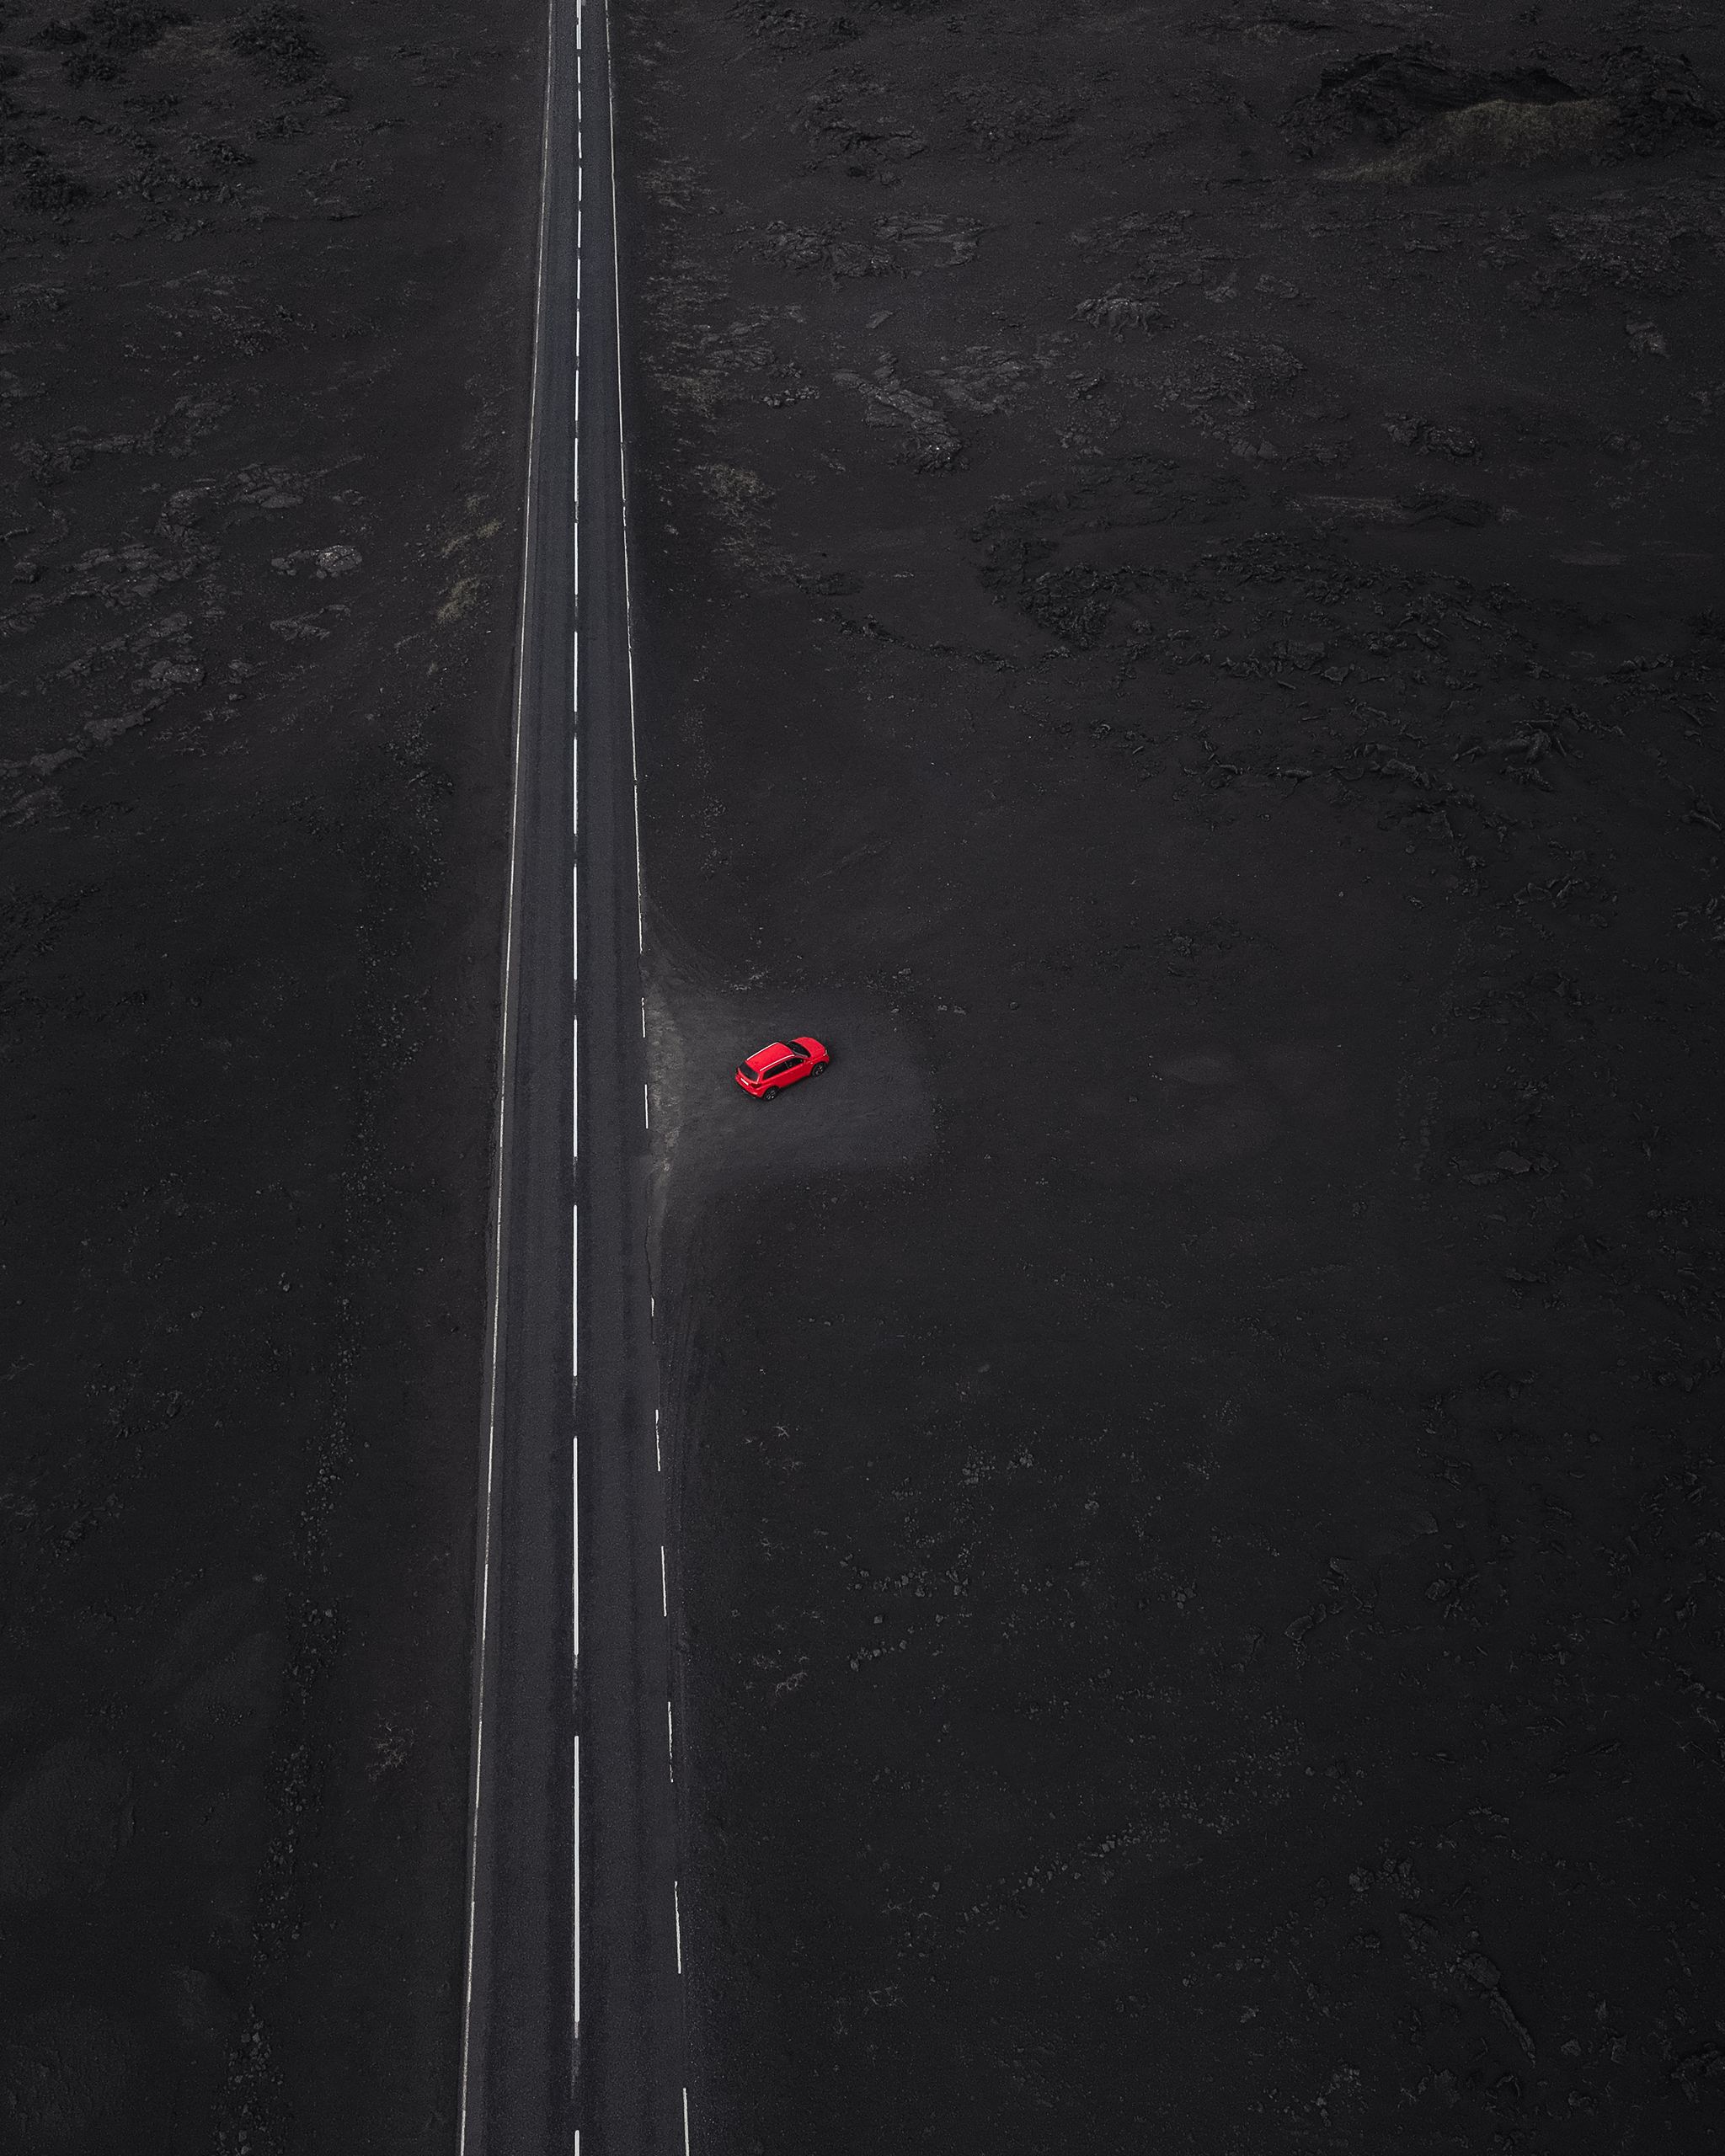 一辆红色的维塔拉租车停在一条靠近道路的地方，周围是熔岩石。